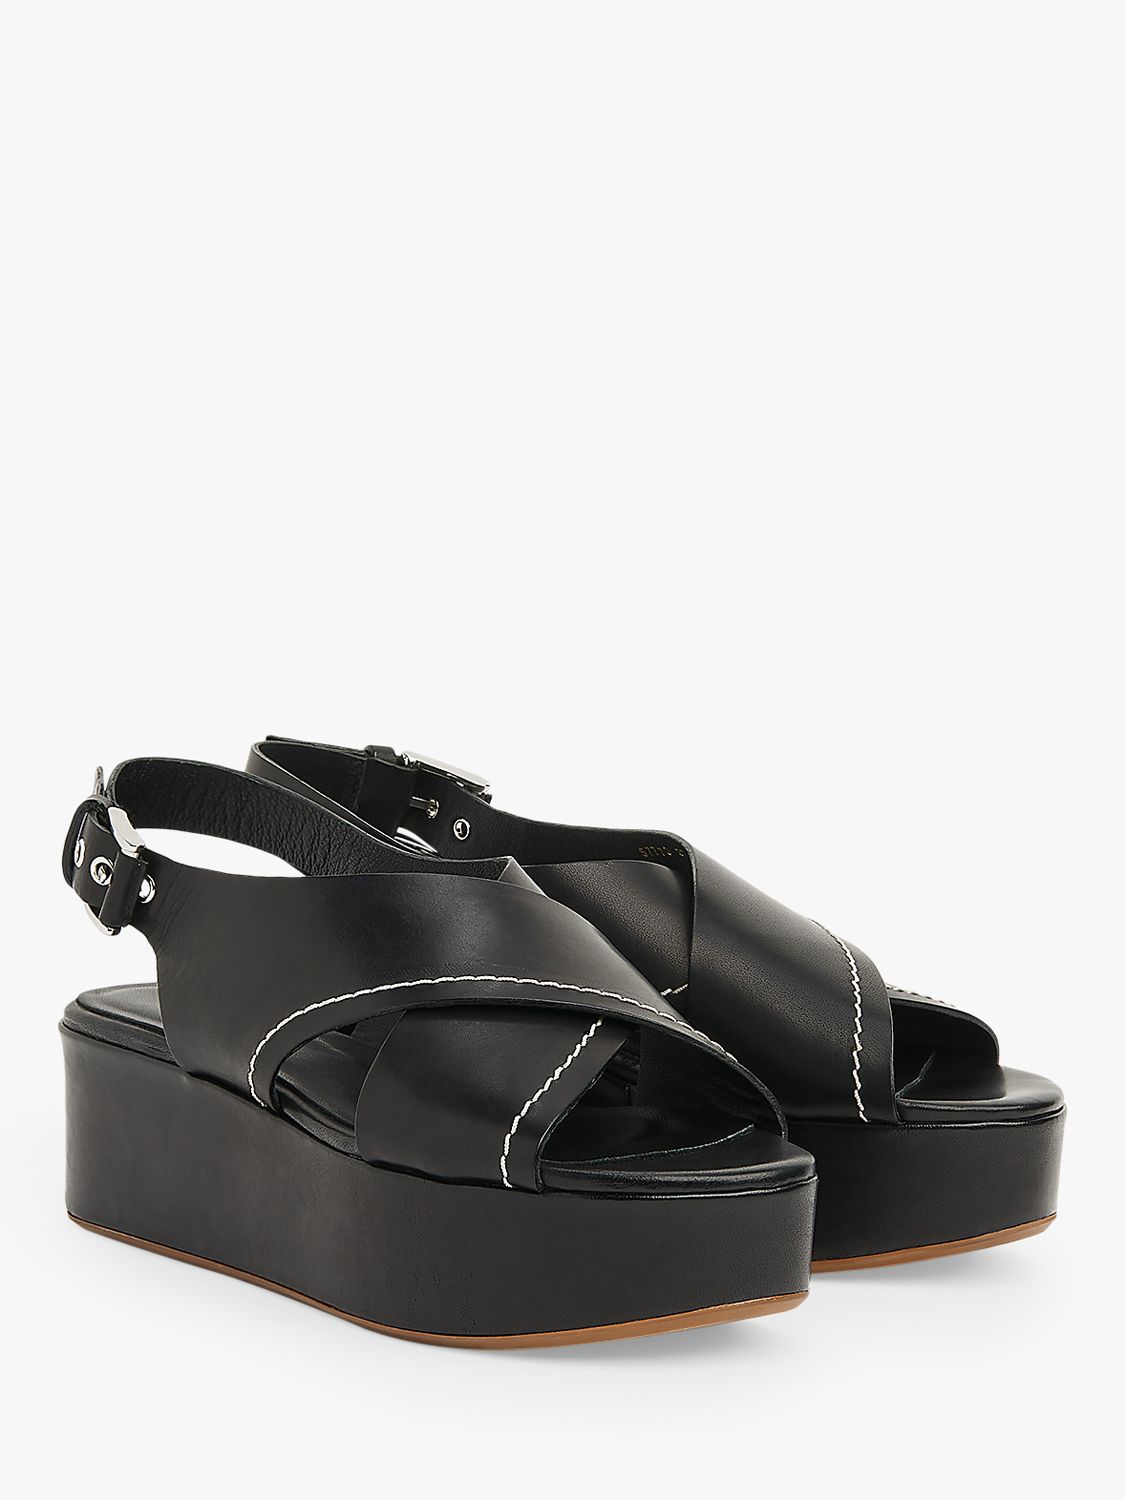 L.K.Bennett Sima Leather Flatform Sandals, Black at John Lewis & Partners